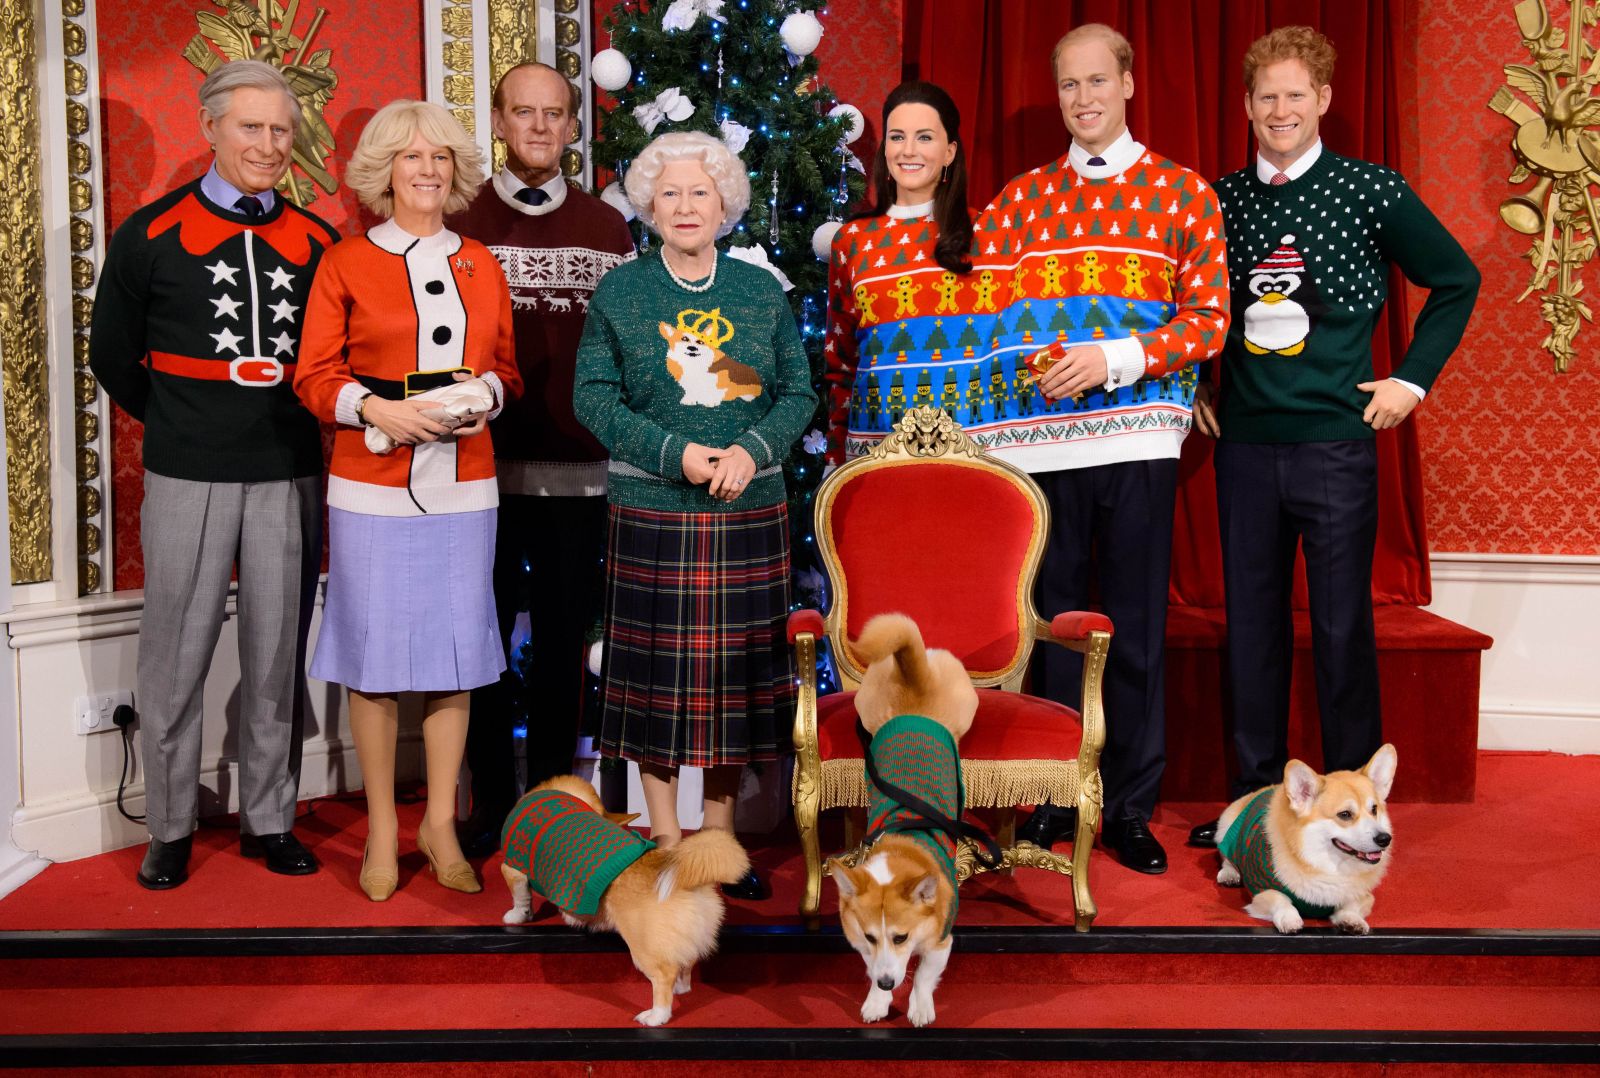 К празднику готовы: Восковые копии Кейт Миддлтон и всей королевской семьи в рождественских свитерах Кейт Миддлтон фото, Елизаветта II